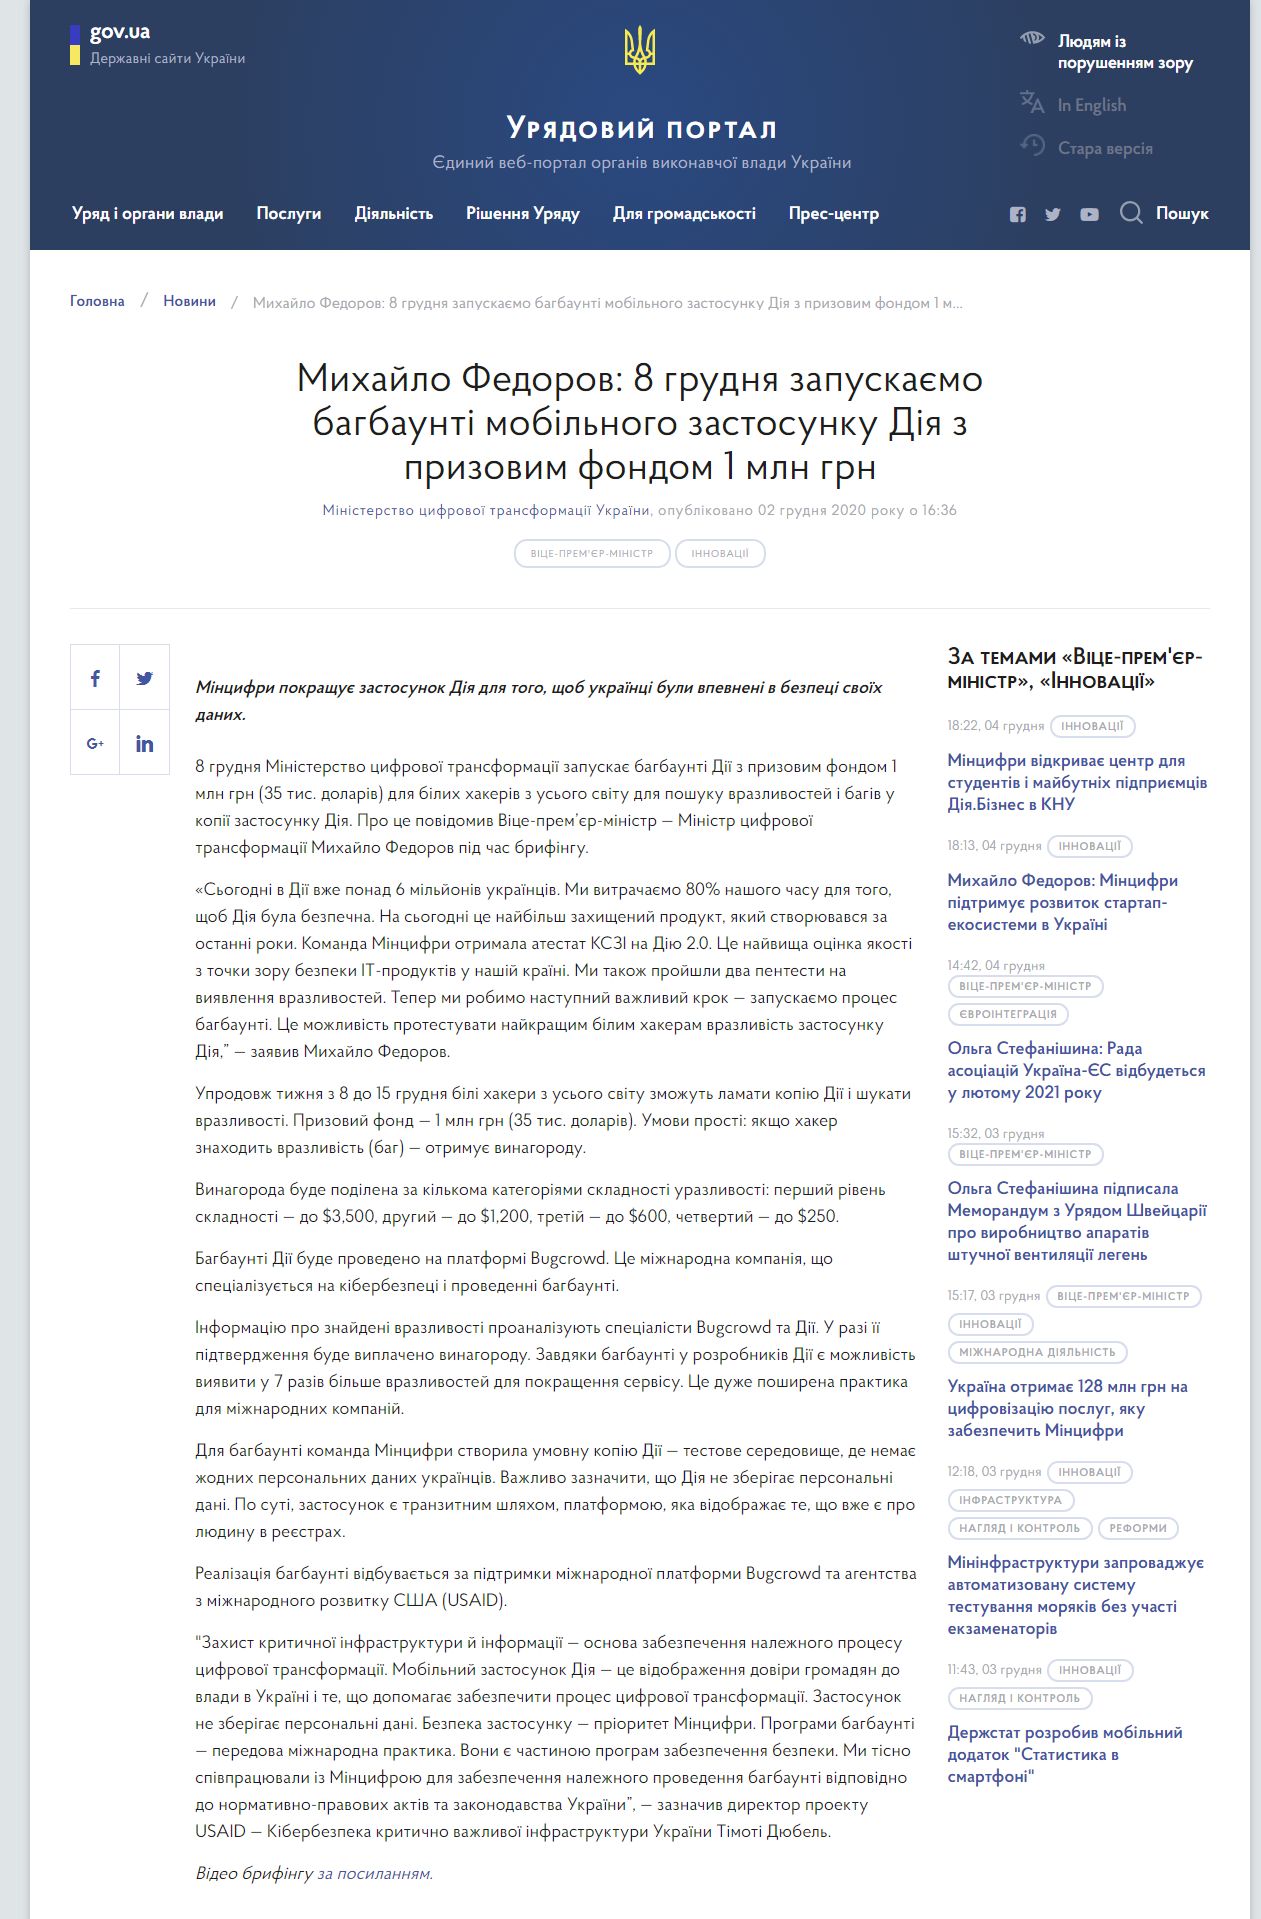 https://www.kmu.gov.ua/news/mihajlo-fedorov-8-grudnya-zapuskayemo-bagbaunti-mobilnogo-zastosunku-diya-z-prizovim-fondom-1-mln-grn